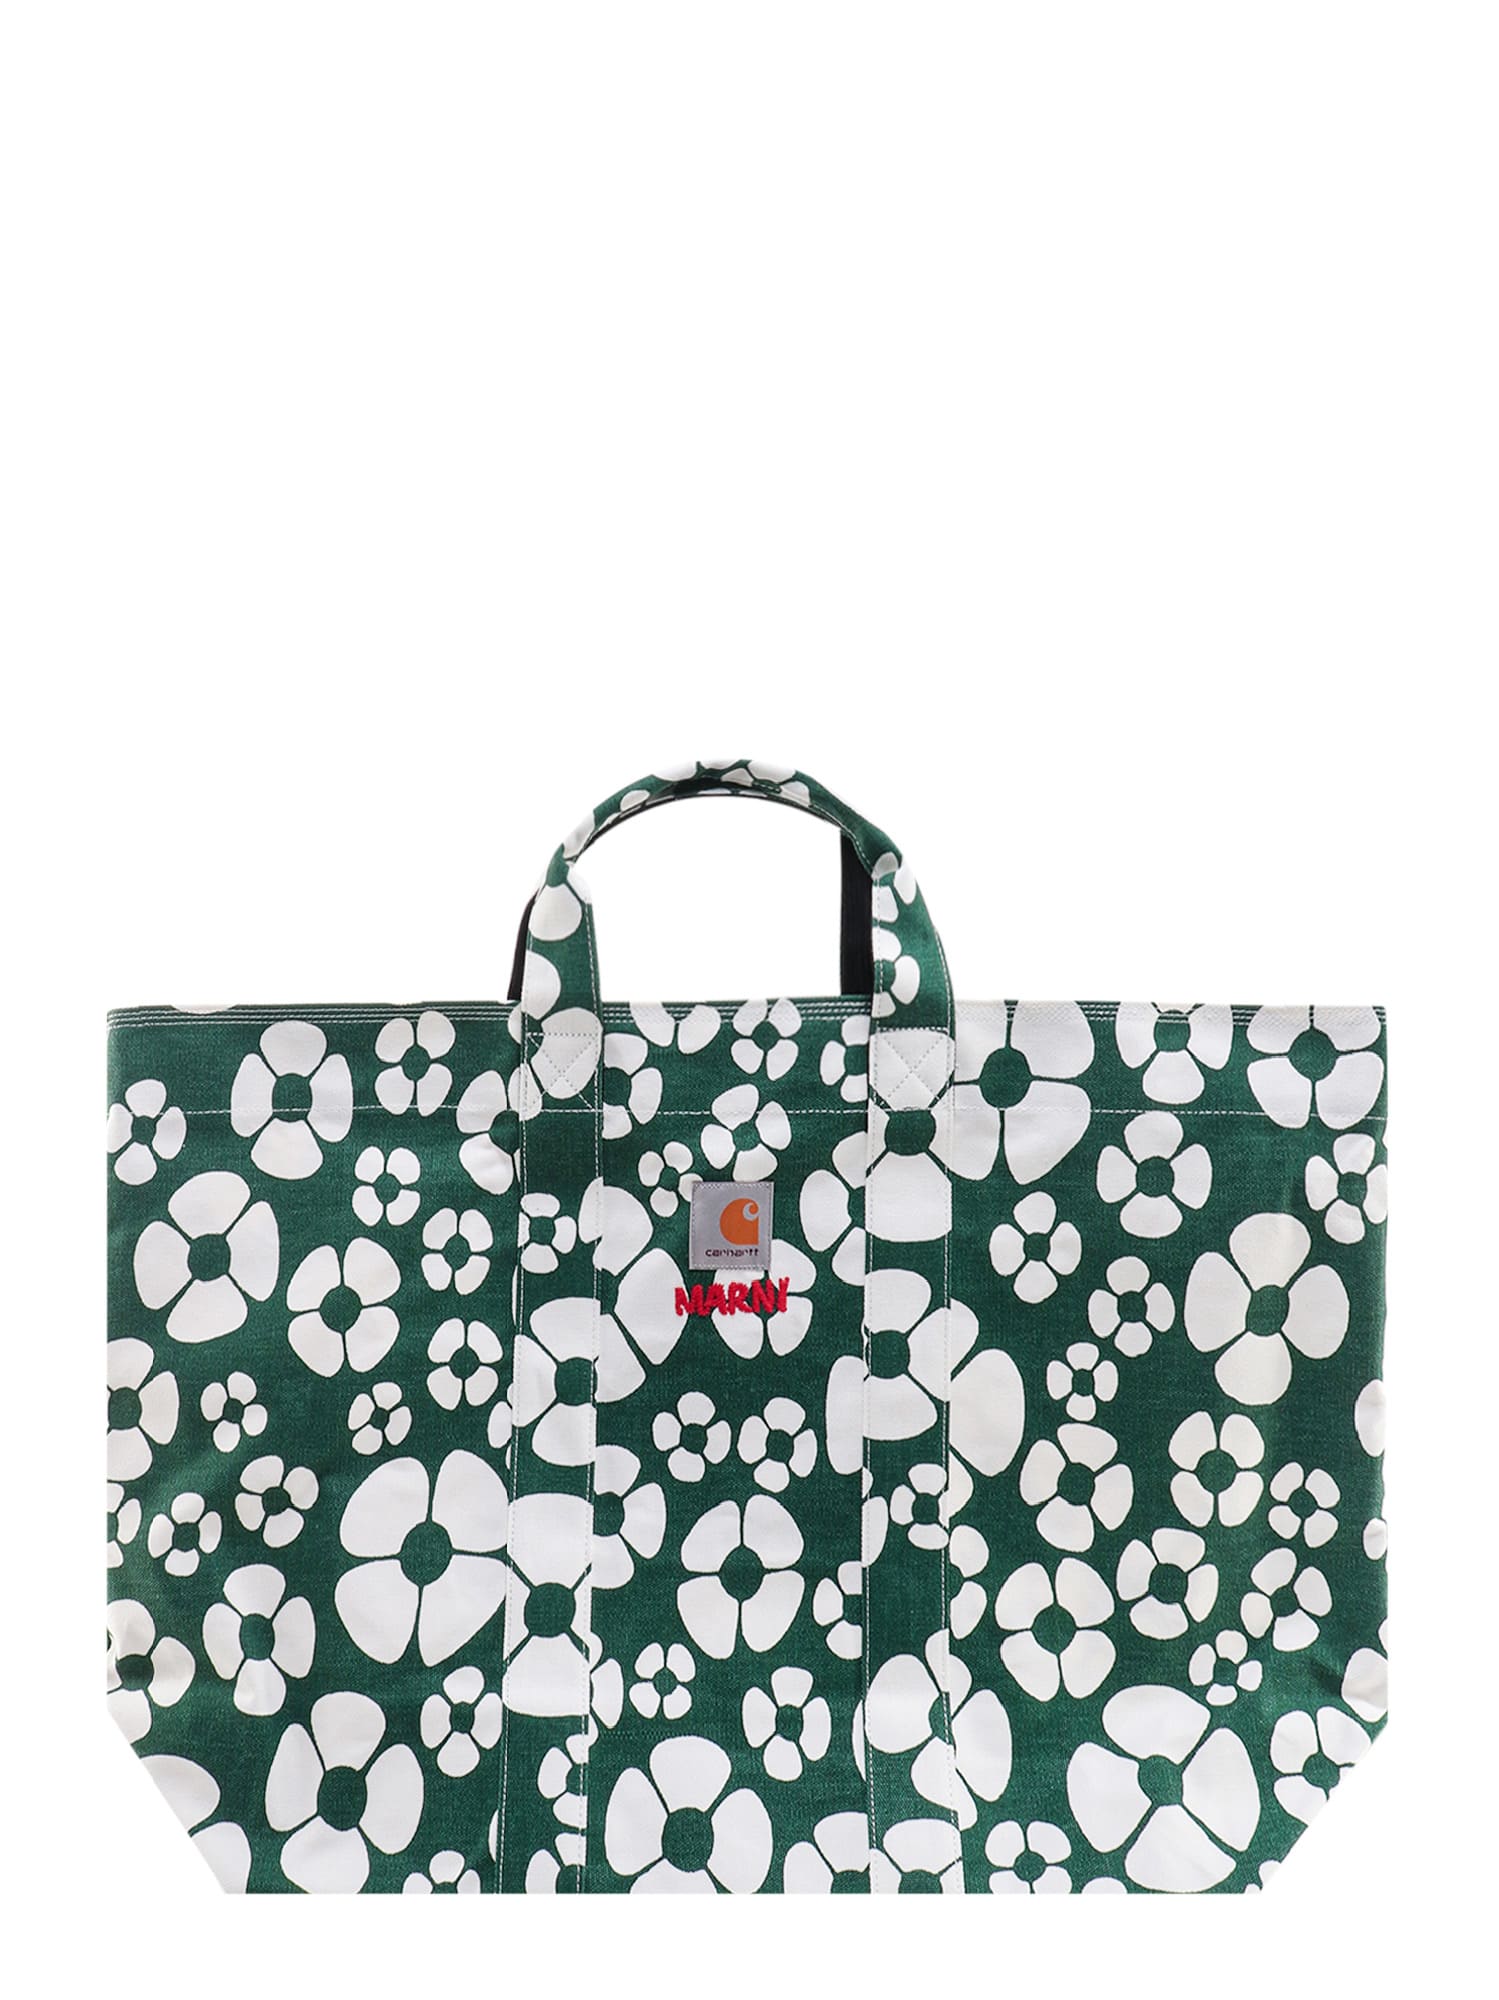 Carhartt Handbag In Green